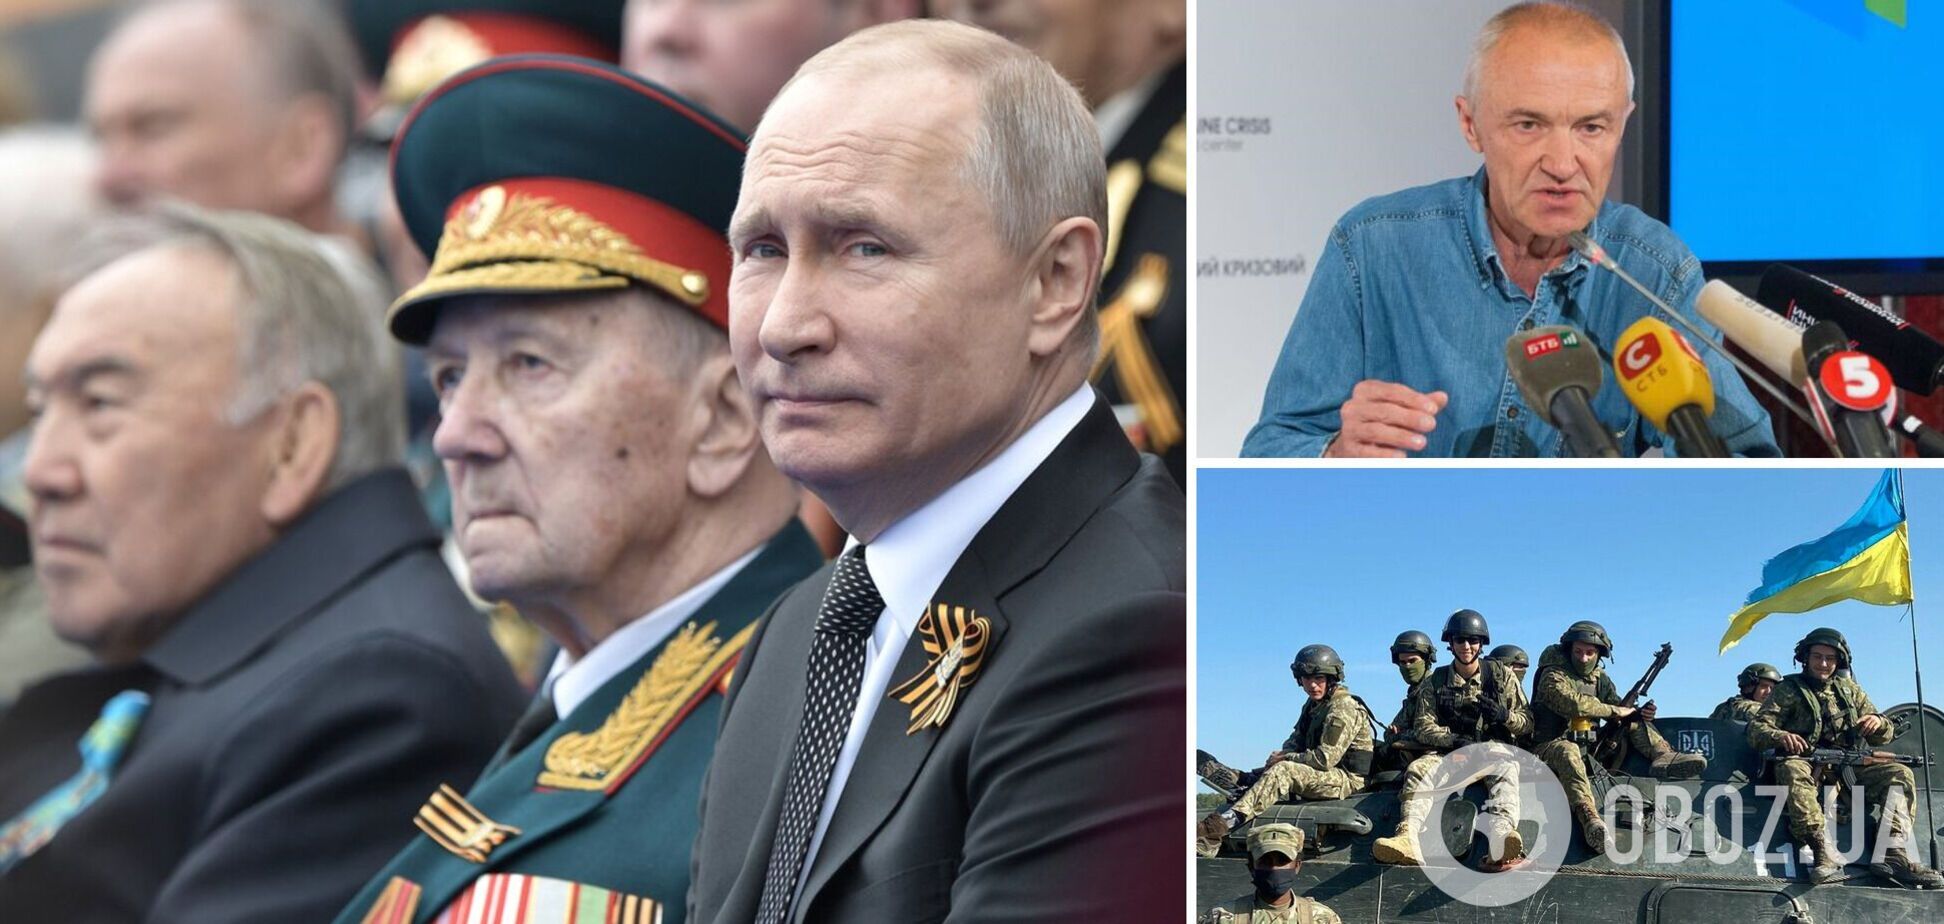 Обухов: 50 тыс. убитых солдат Путина изменят ситуацию в РФ, побед у этой армии не будет. Интервью